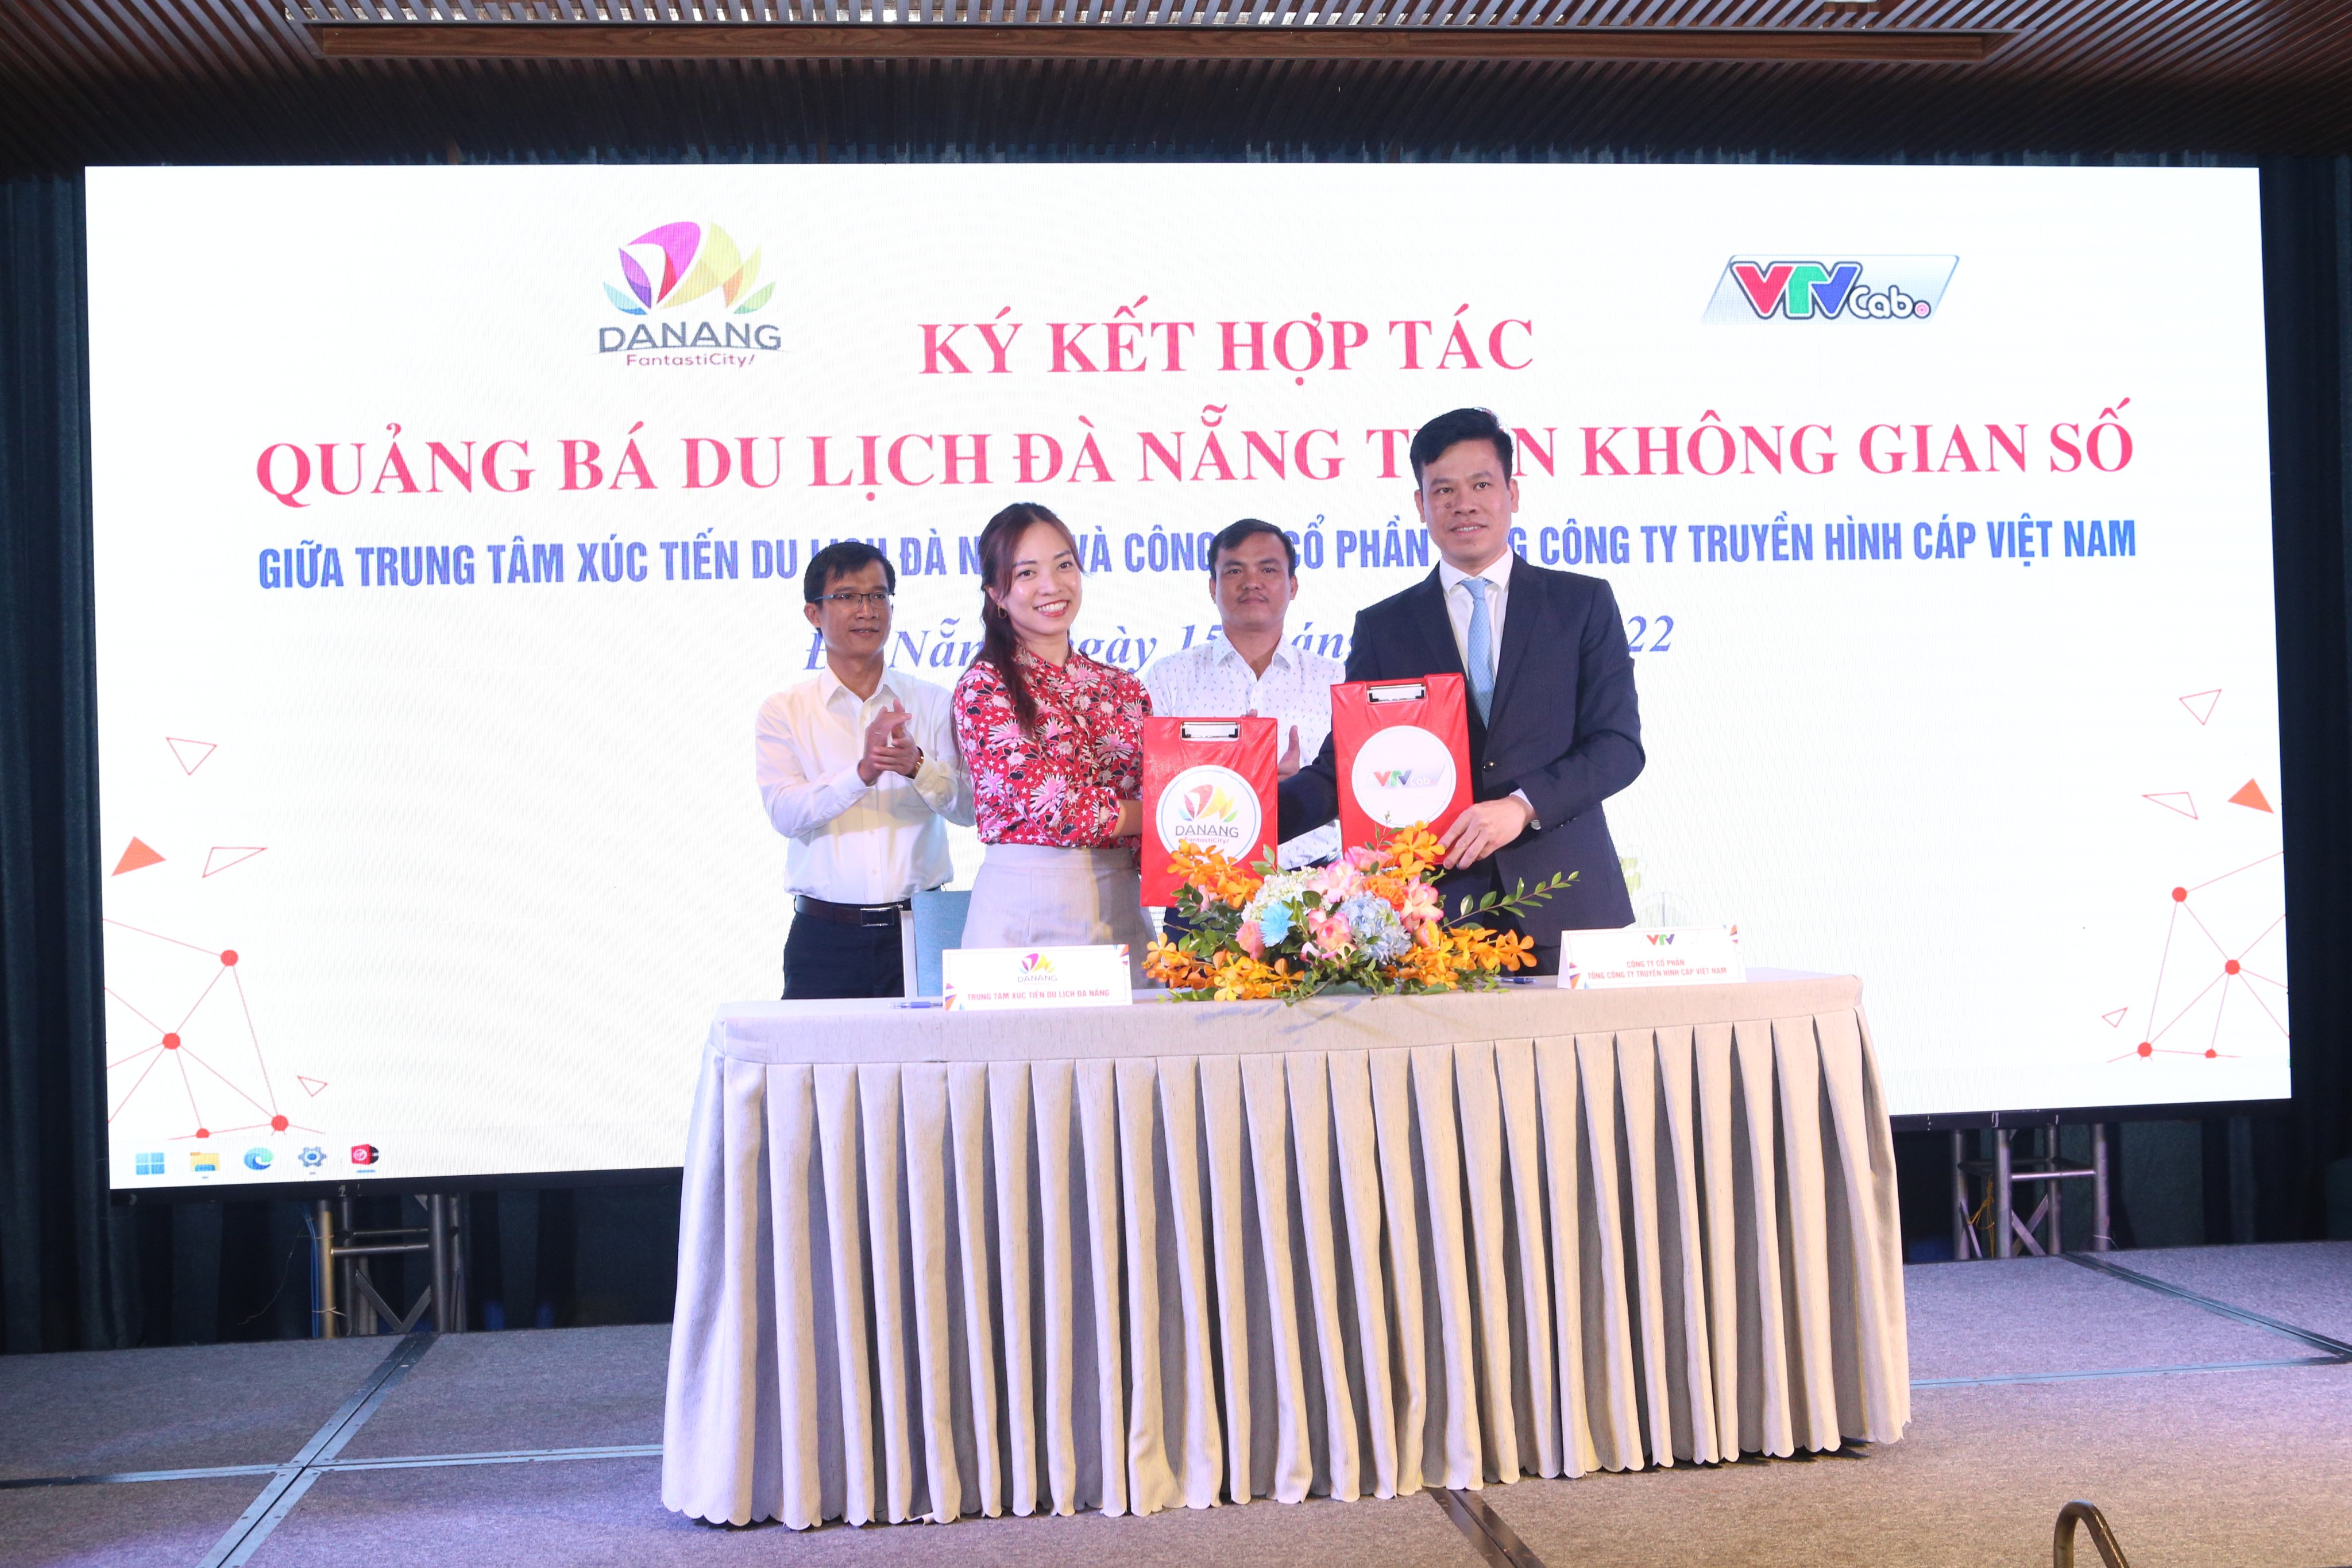 Trung tâm Xúc tiến Du lịch Đà Nẵng đã ký kết hợp tác quảng bá du lịch Đà Nẵng trên không gian số